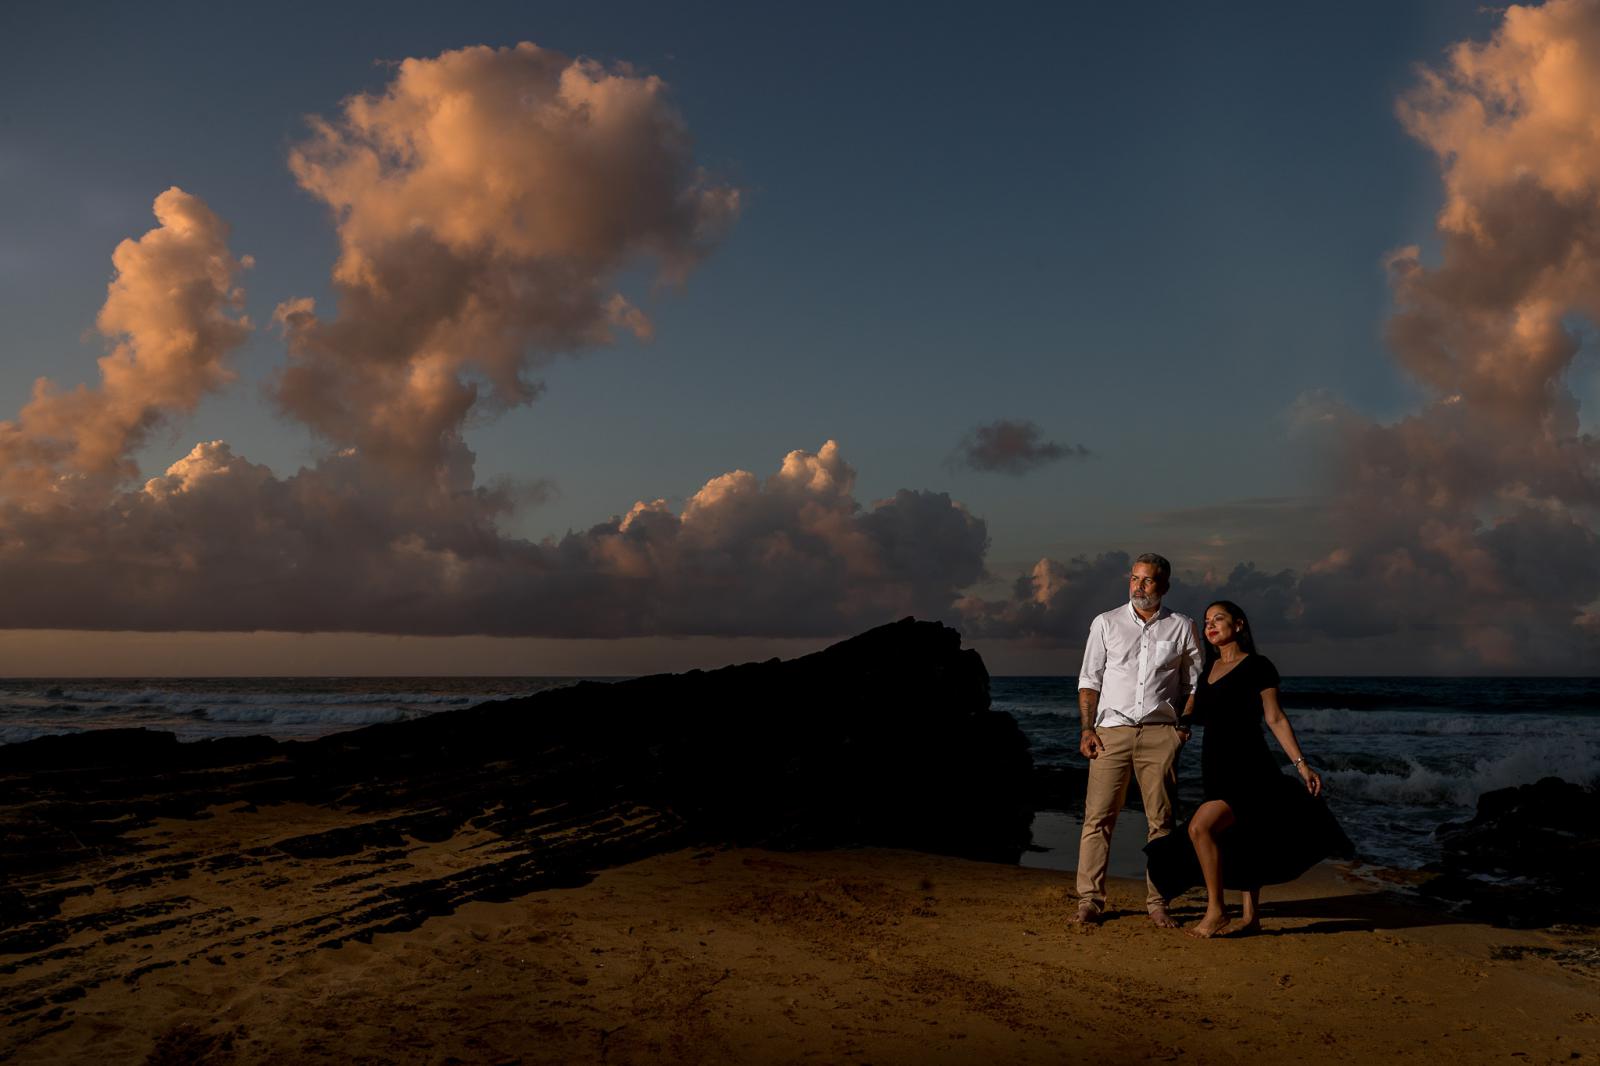 Huwelijksaanzoek met een zonsondergang in Puerto Rico door bruidsfotograaf Den Haag